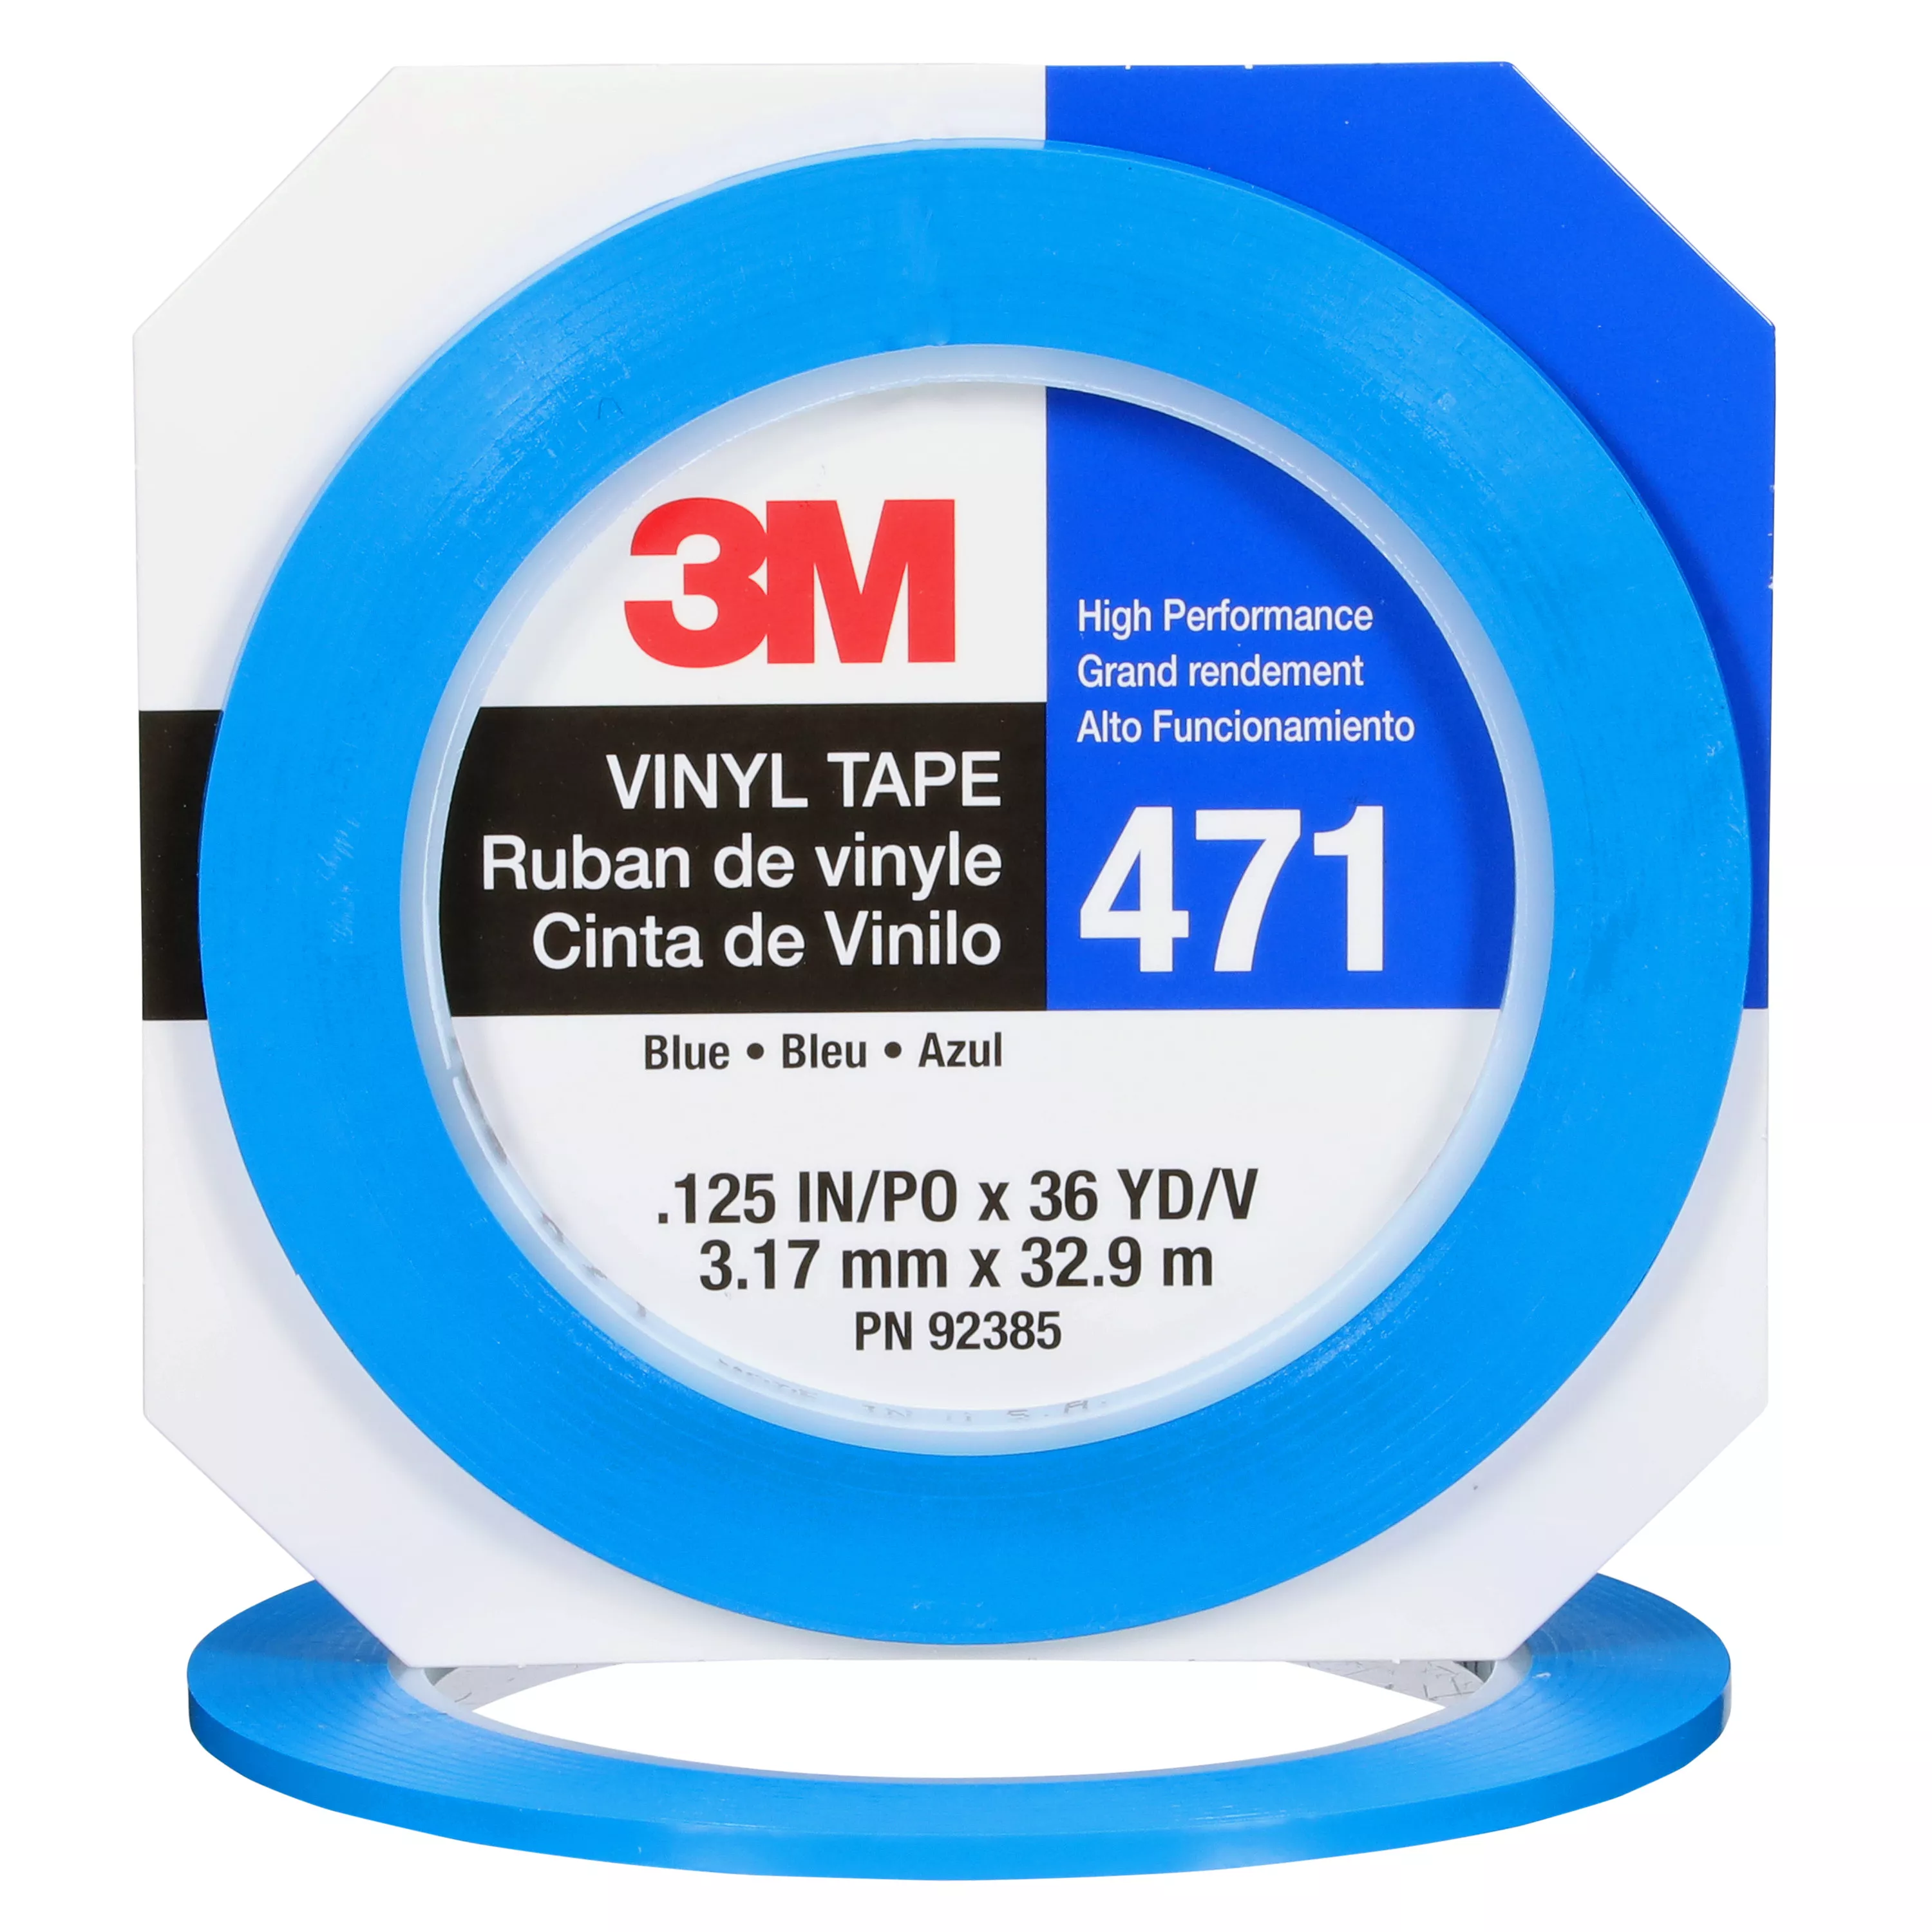 3M™ Vinyl Tape 471, Blue, 1/8 in x 36 yd, 5.2 mil, 144 Roll/Case